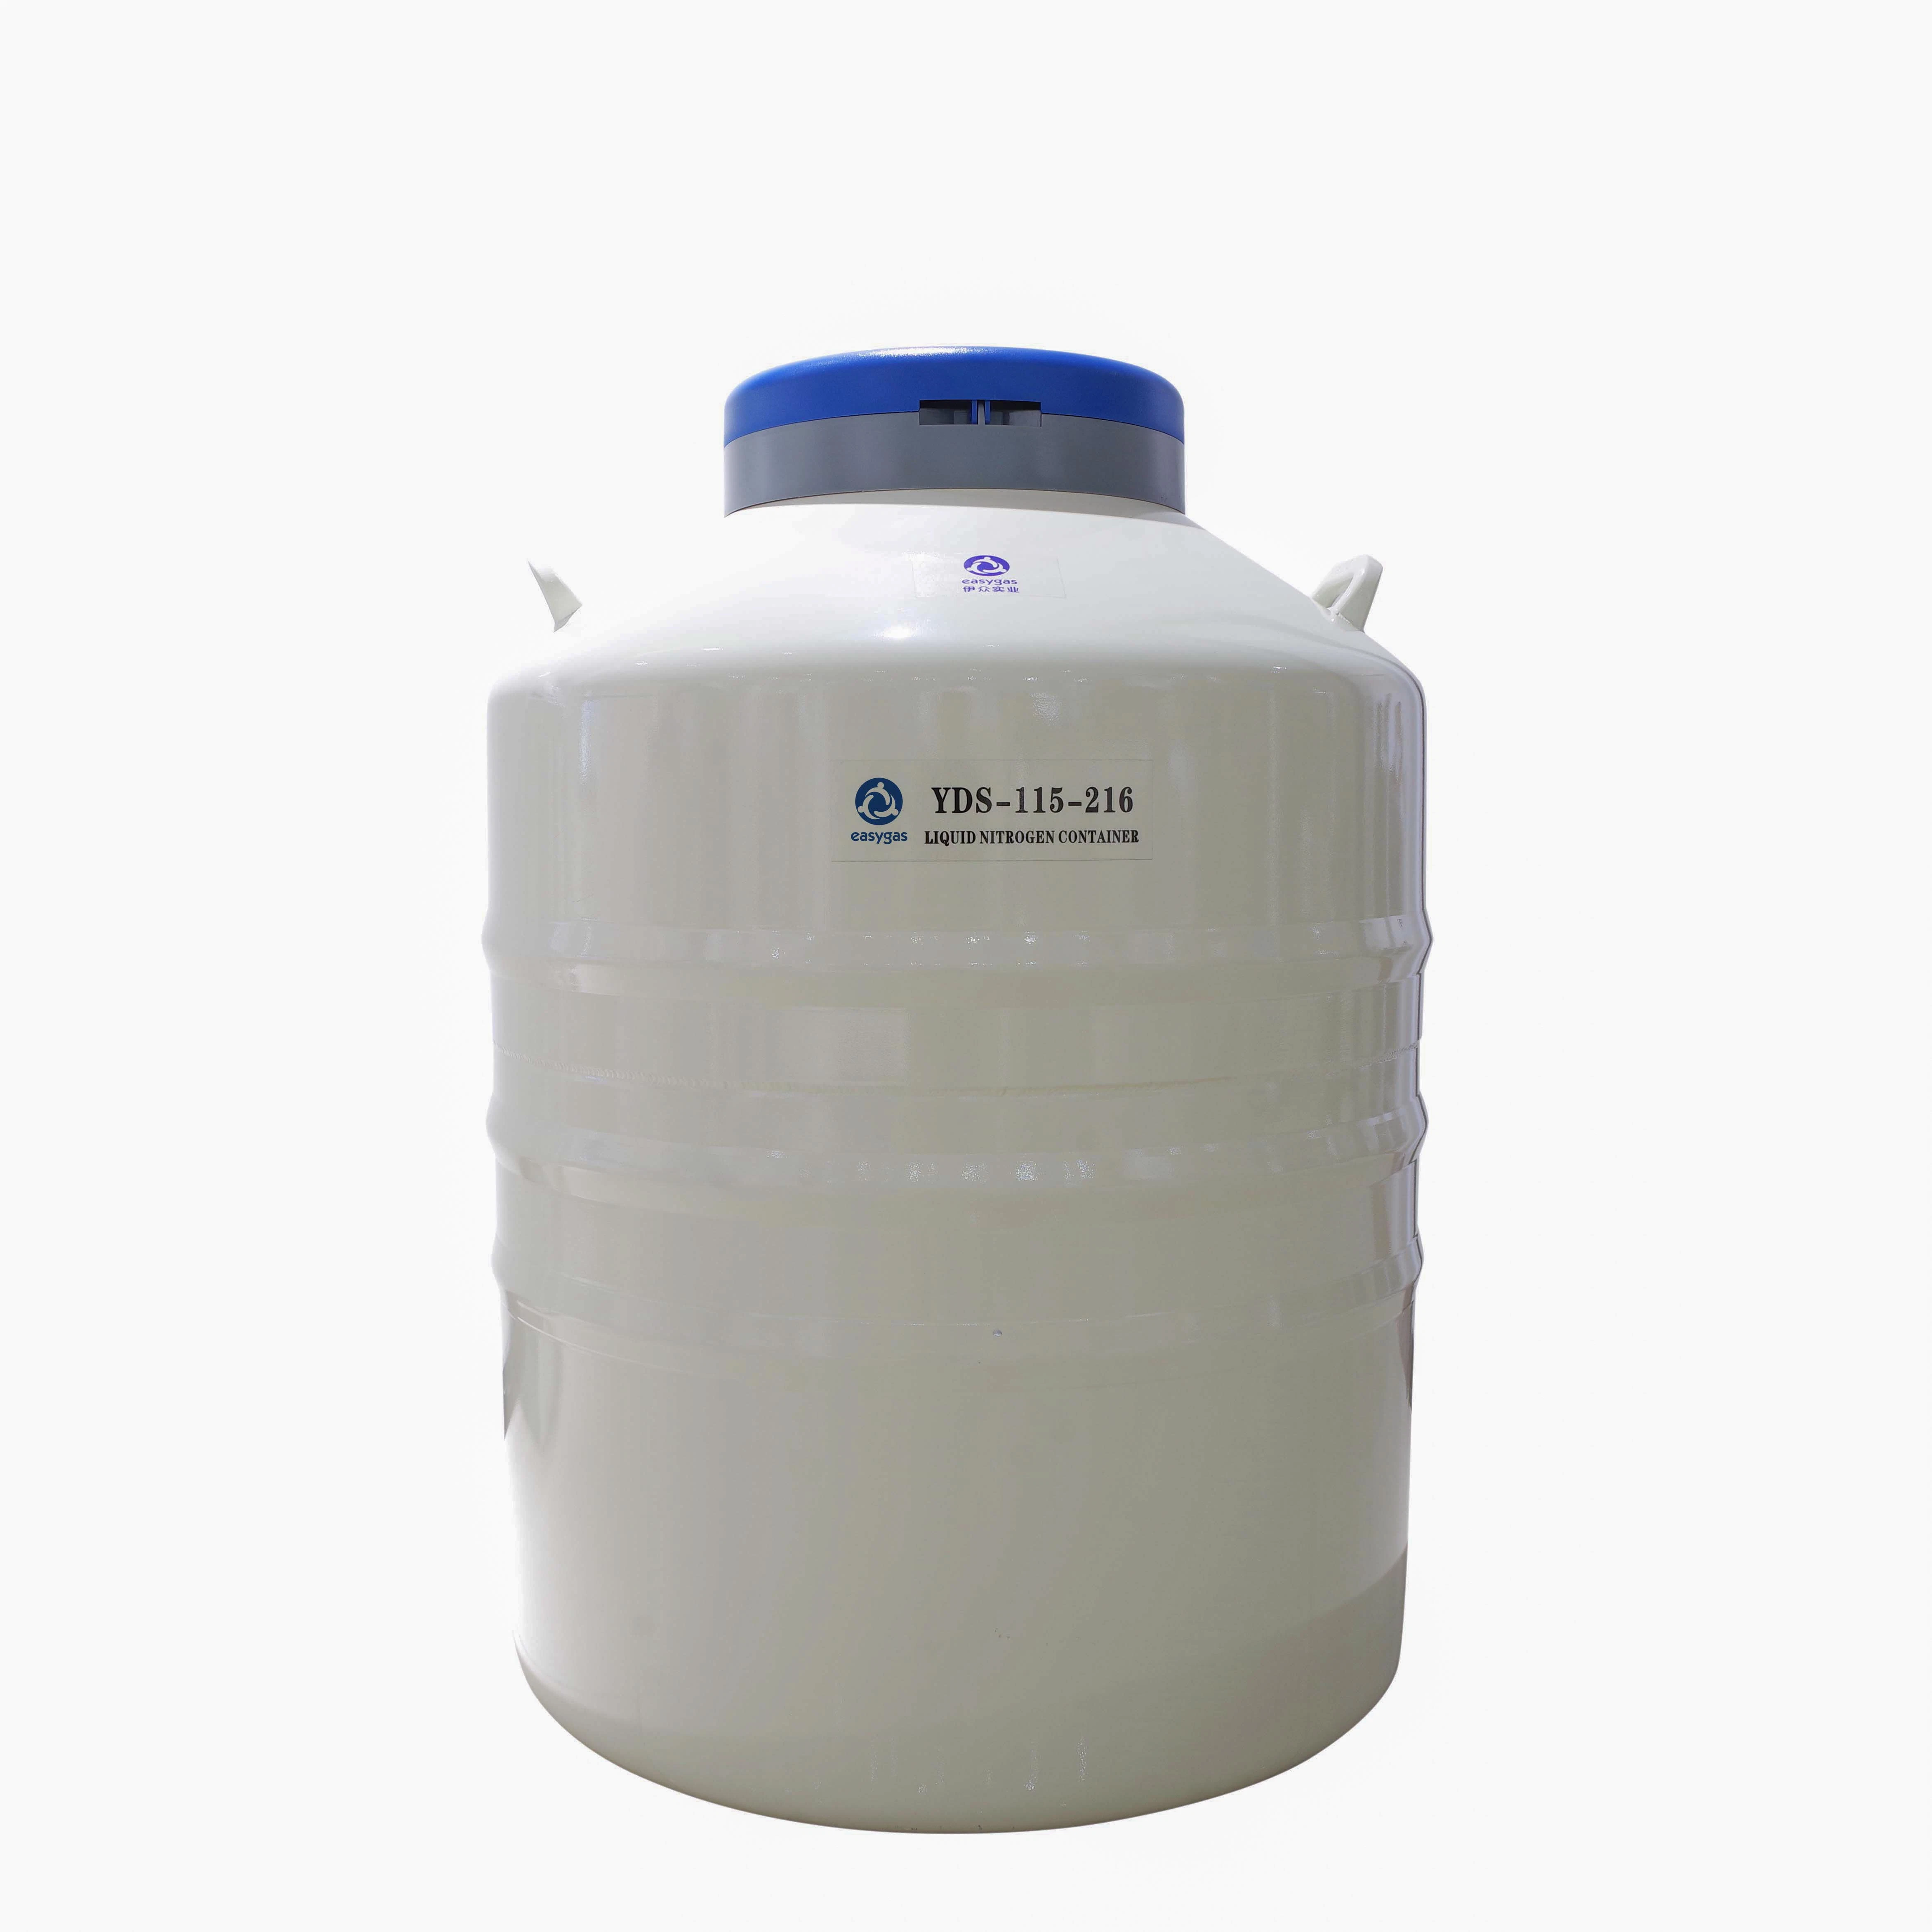 Yds-115-216 Liquid Nitrogen Tank Cryogenic Dewar Liquid Nitrogen Container for Semen Storage